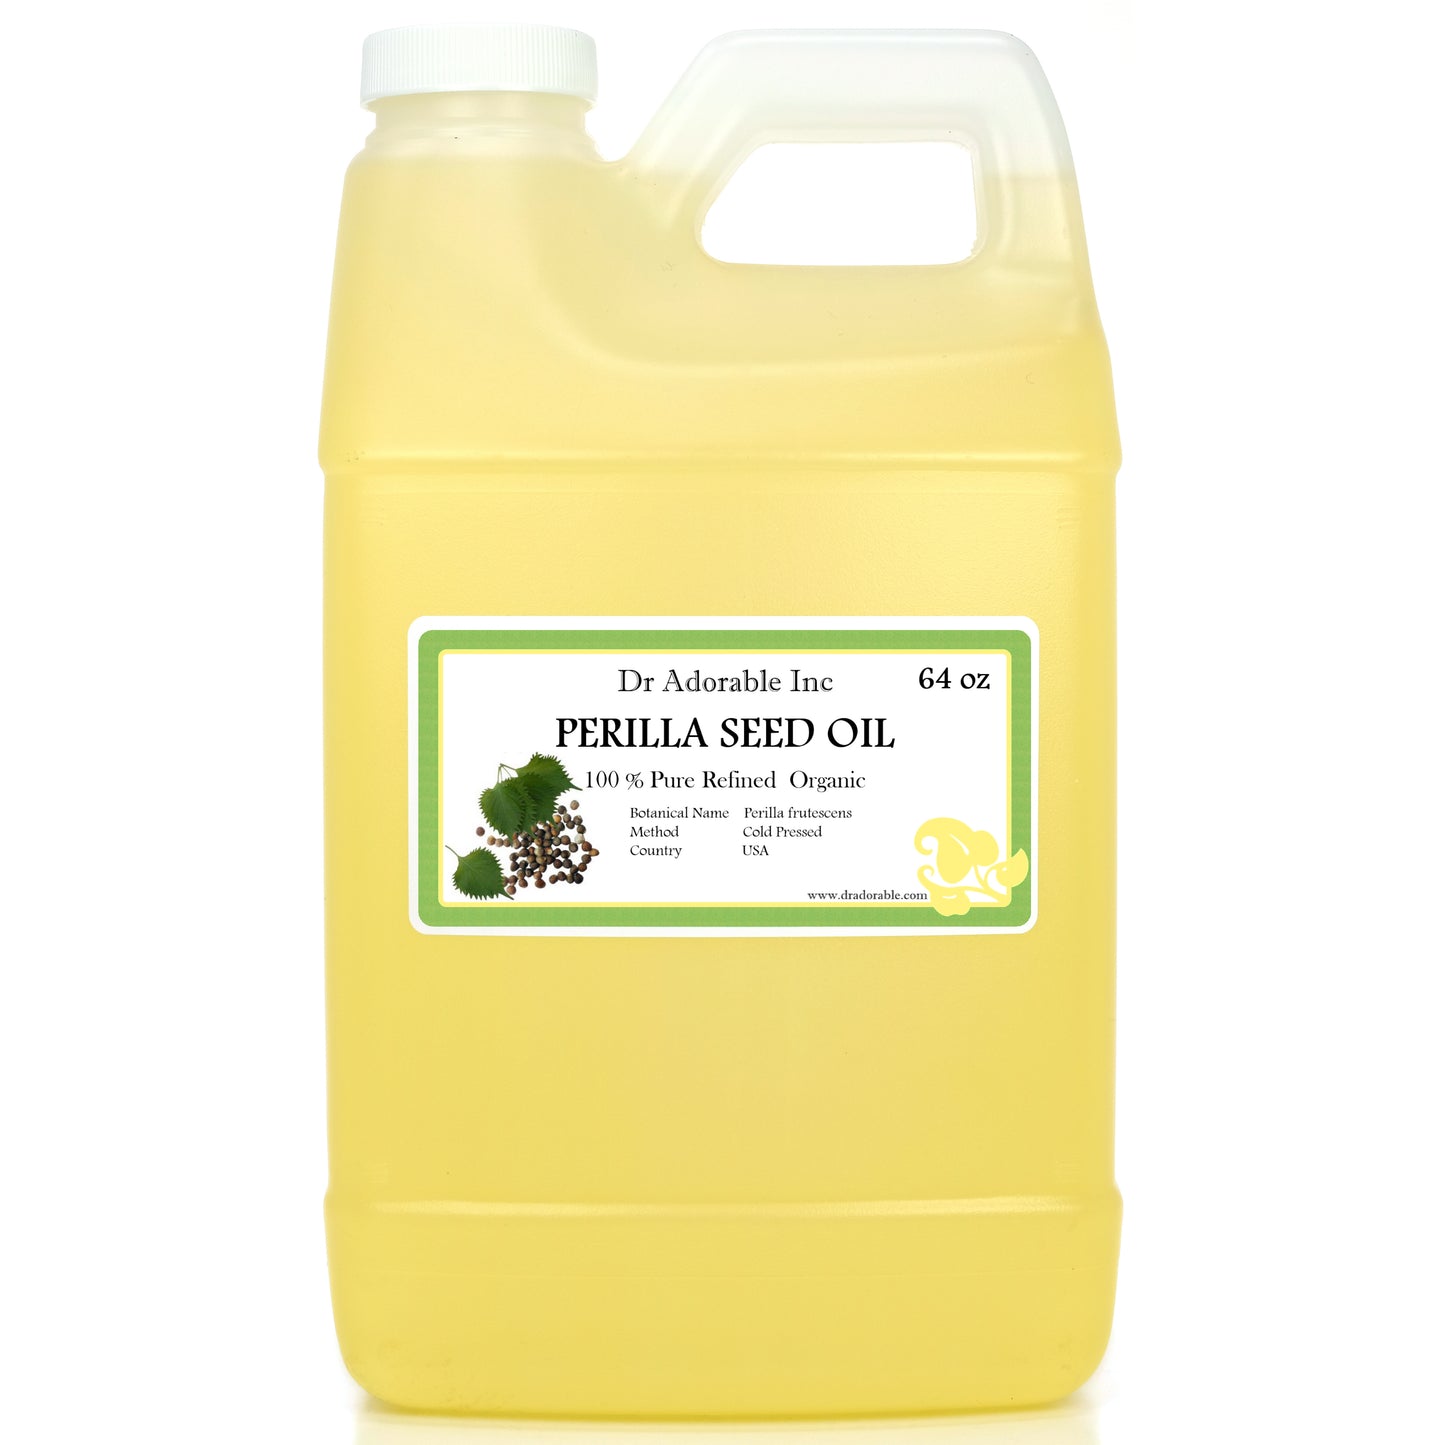 Perilla Seed Oil - 100% Pure Natural Organic Cold Pressed